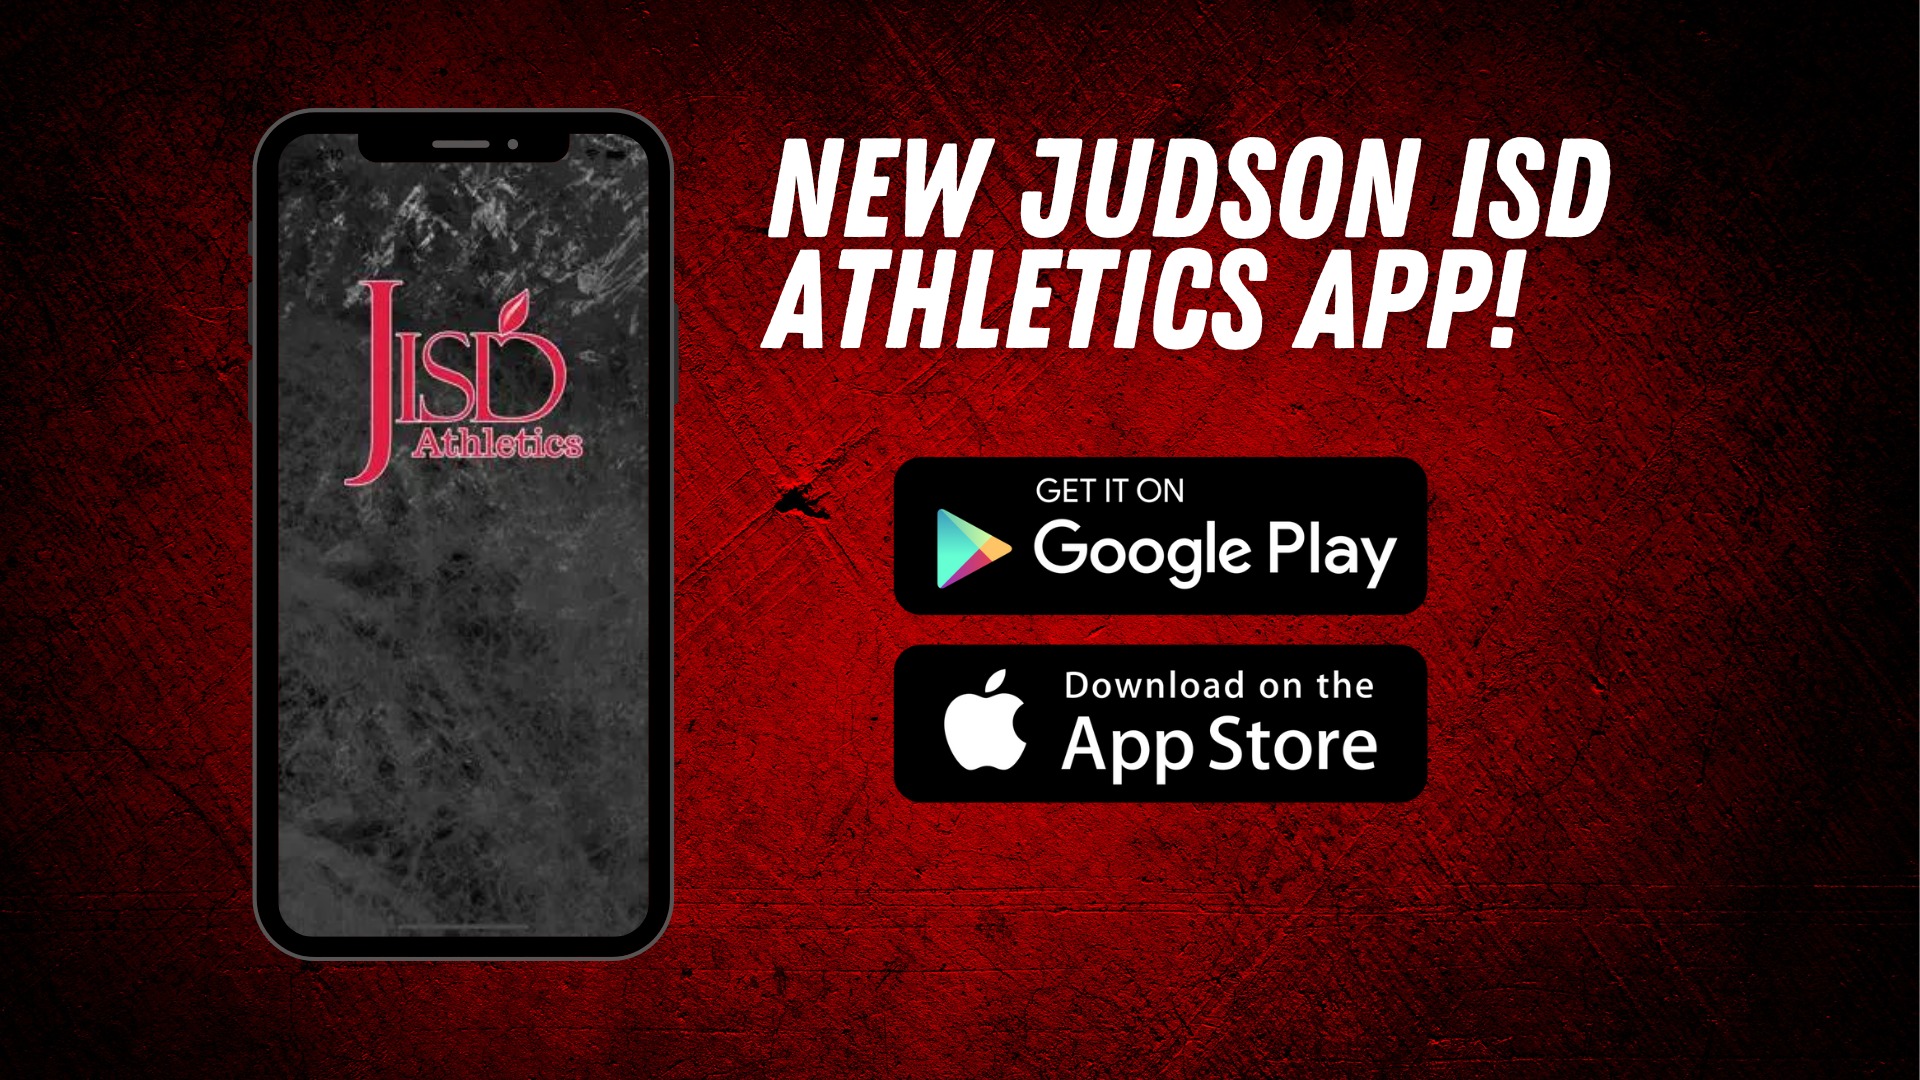 Woodlake Hills MSSlide 3 - Judson ISD Athletics releases new app